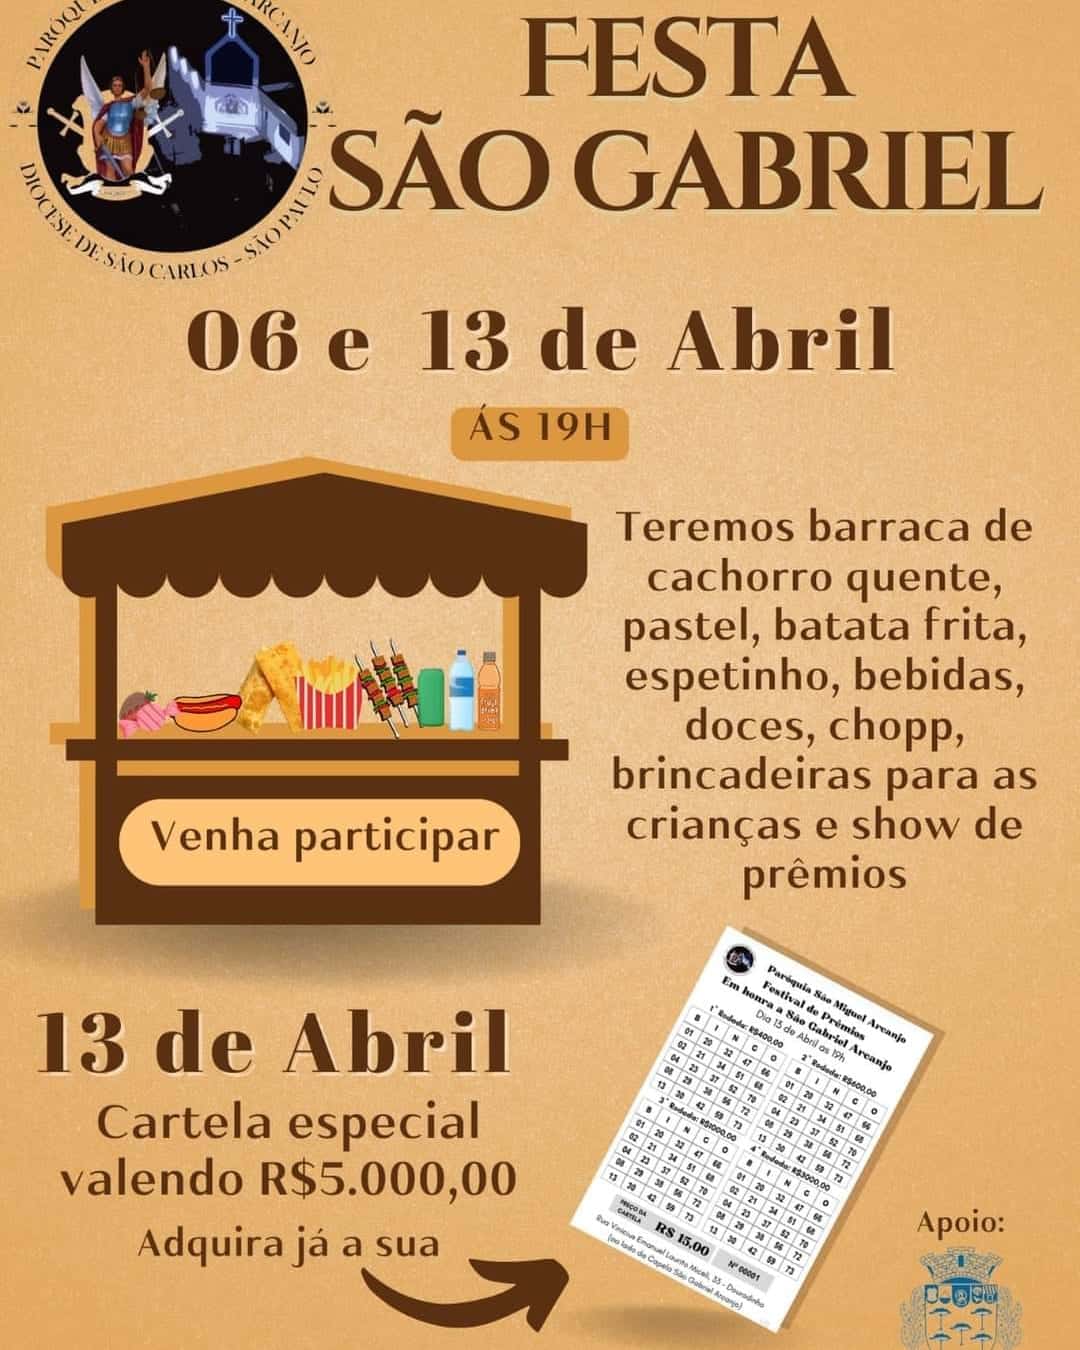 Festa de São Gabriel Arcanjo acontece nos dias 06 e 13 de abril